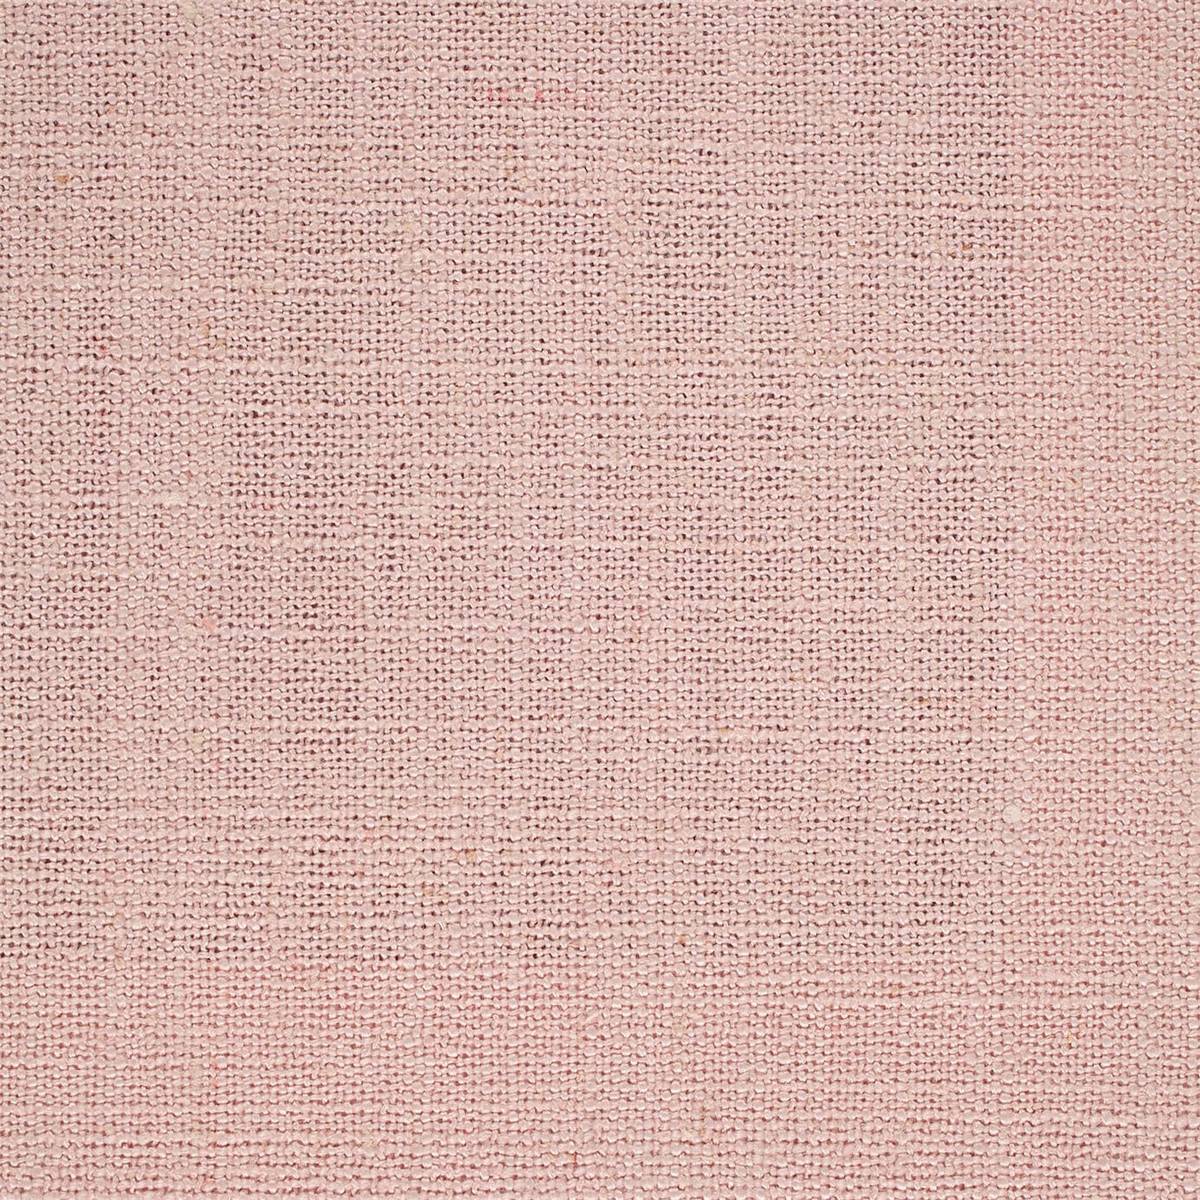 Lagom Powder Fabric by Sanderson